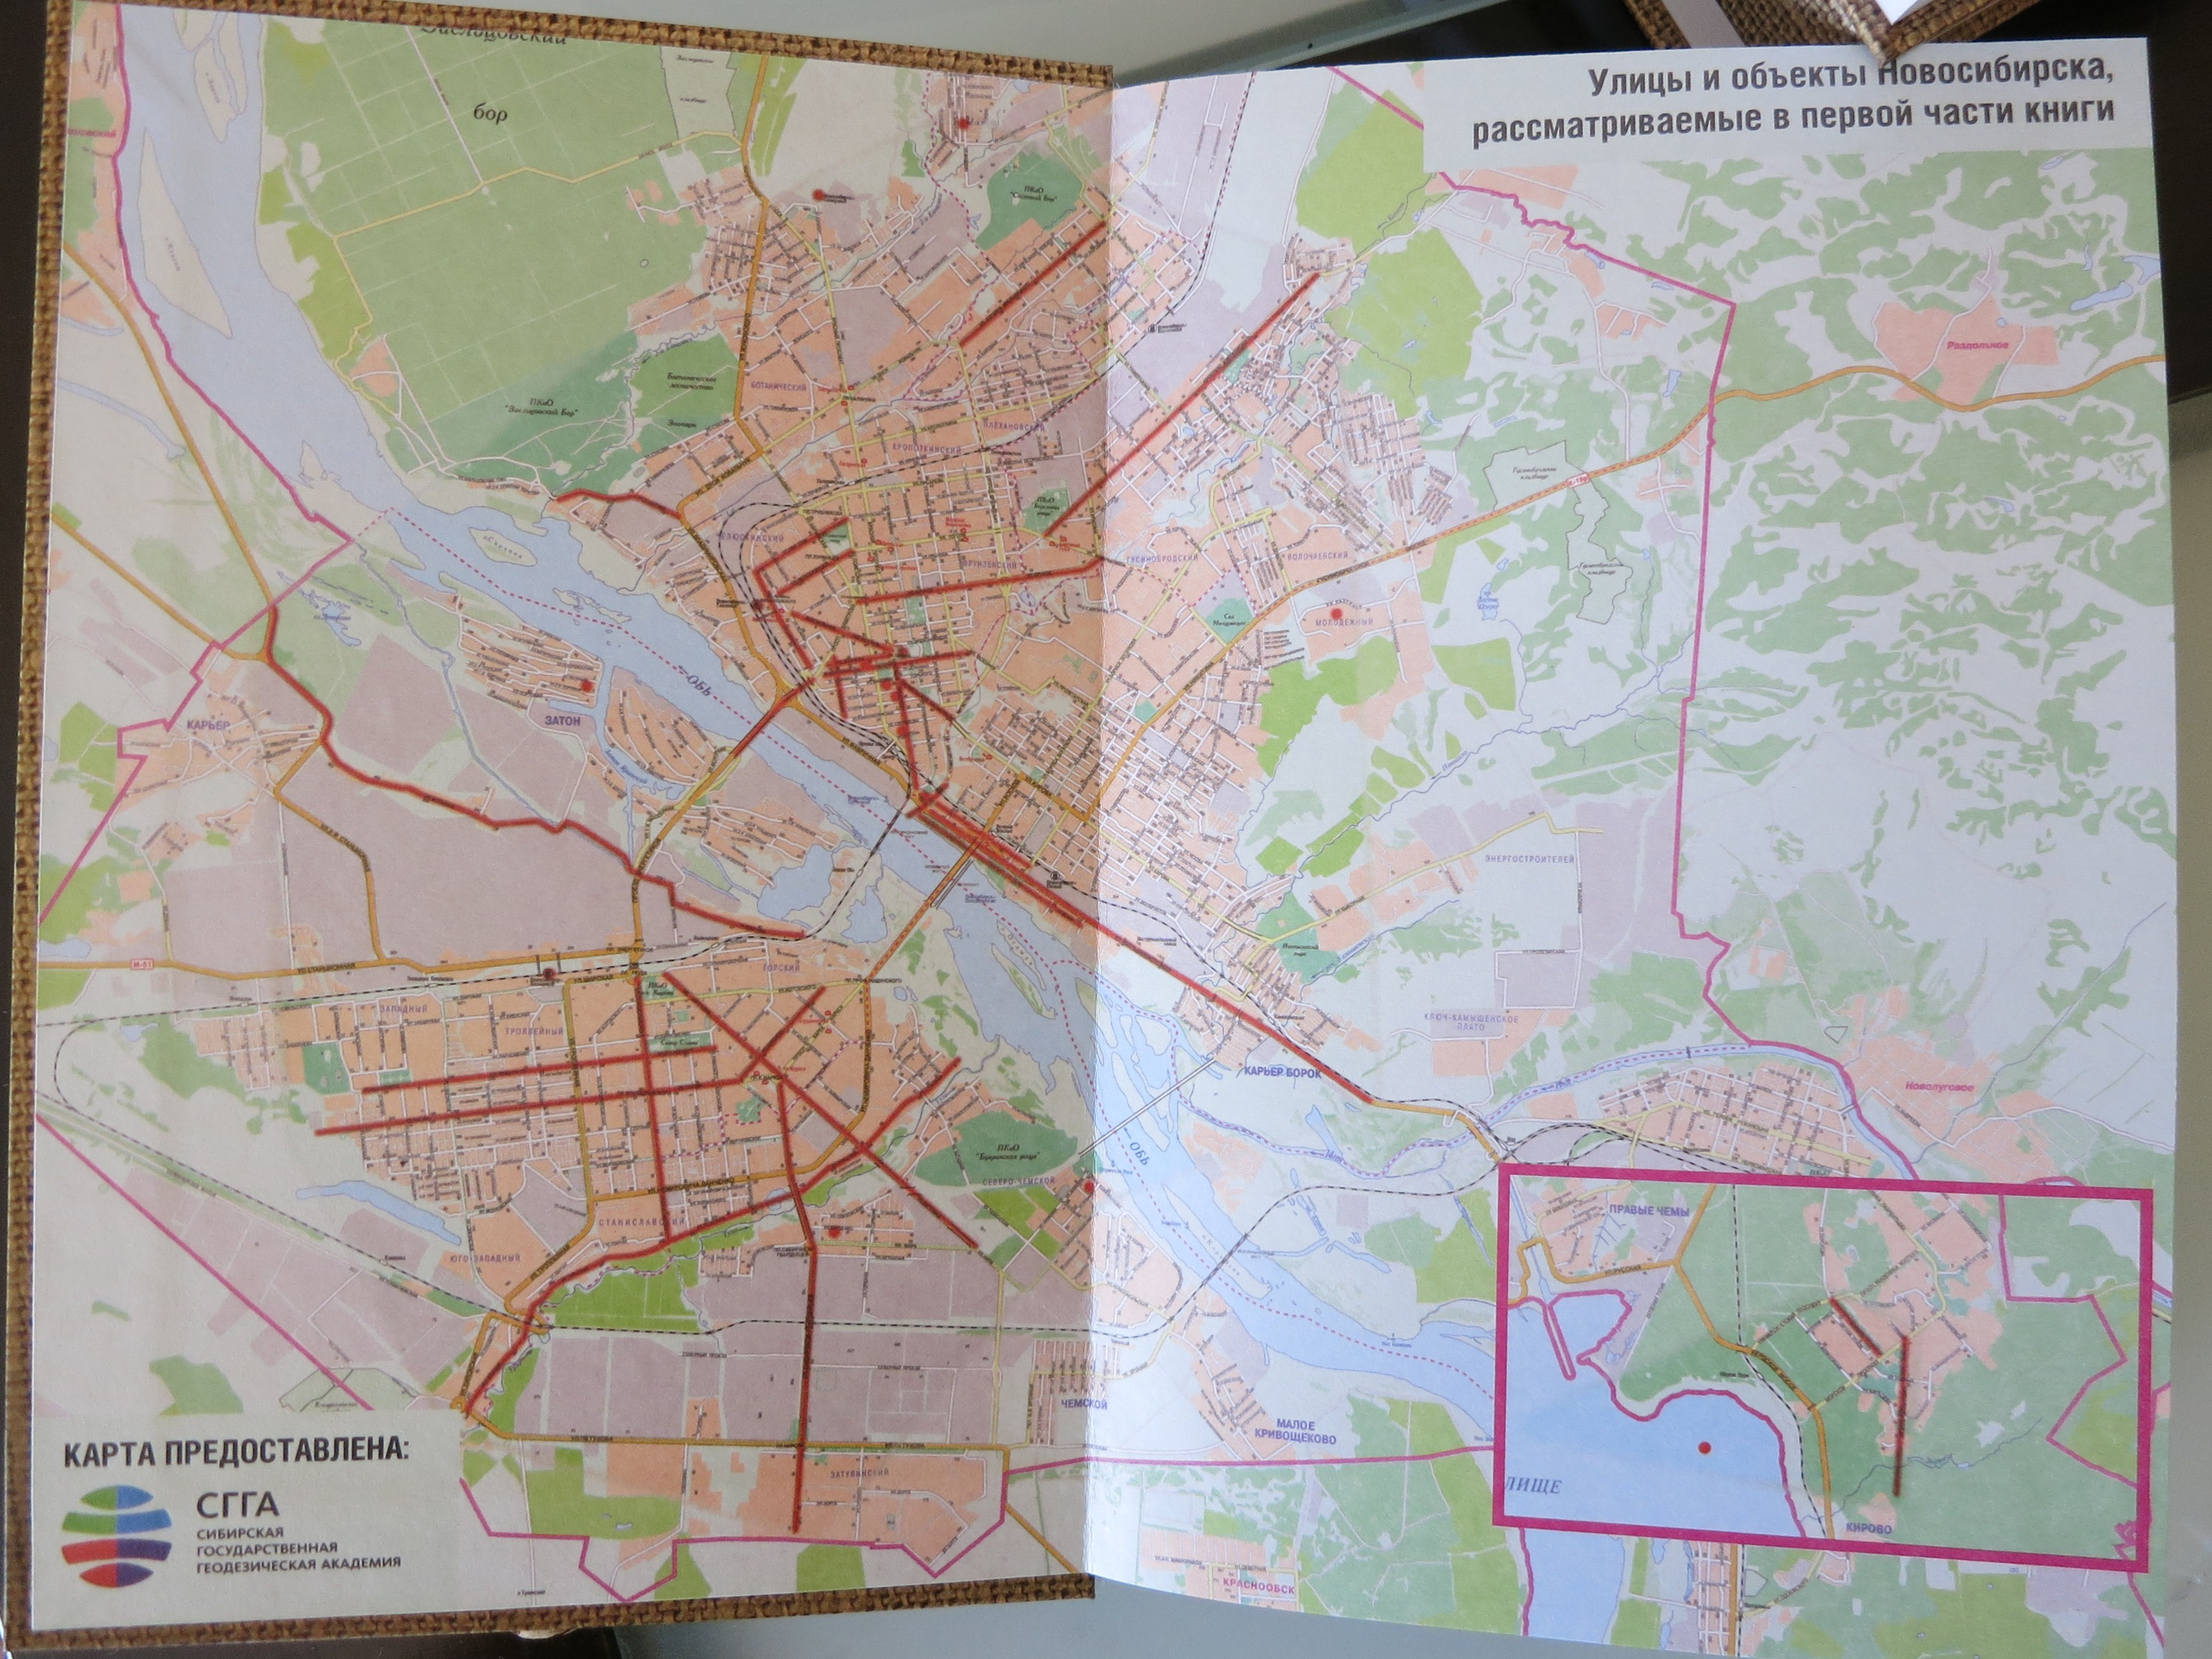 Краевед отметил на карте Новосибирска улицы, о которых рассказывается в книге